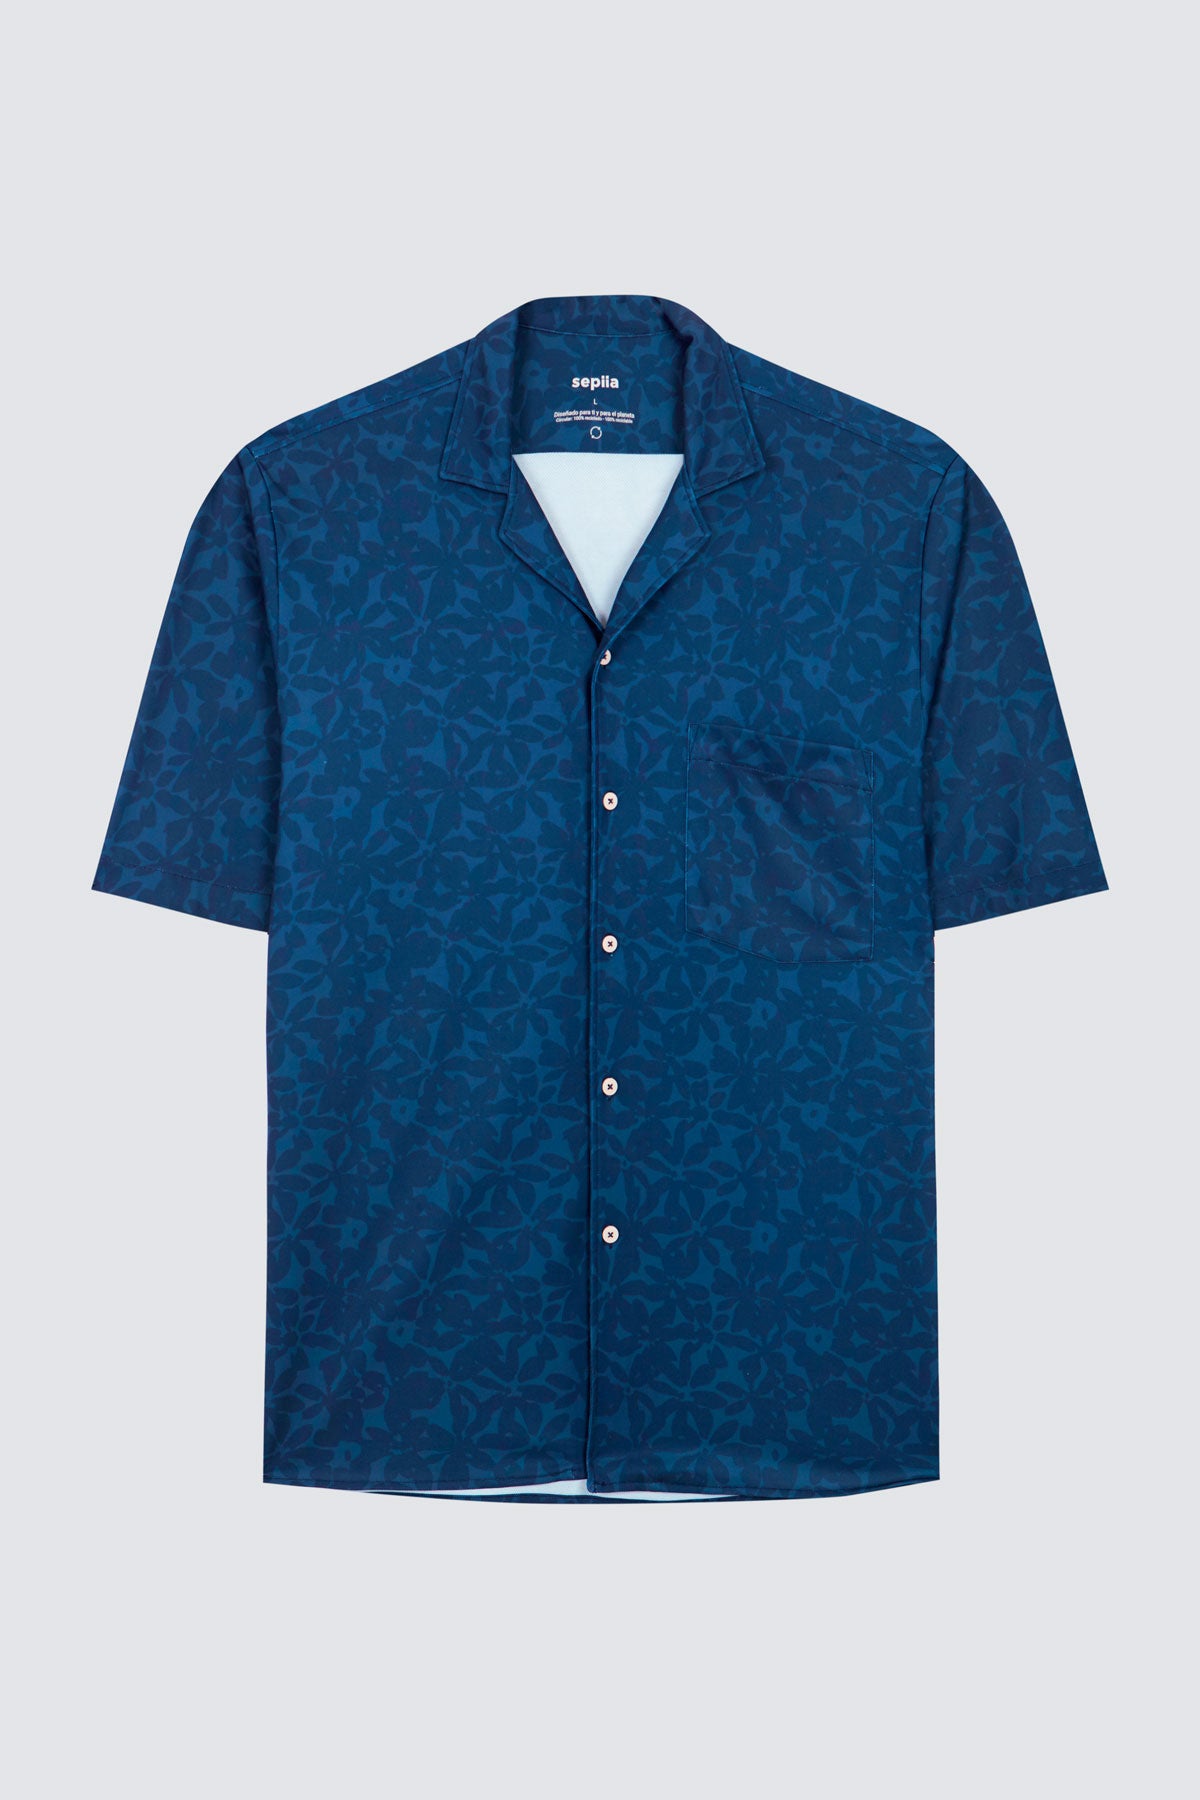 Camisa manga corta con estampado de flores azul marino de Sepiia, fresca y elegante, perfecta para el verano. Foto prenda en plano